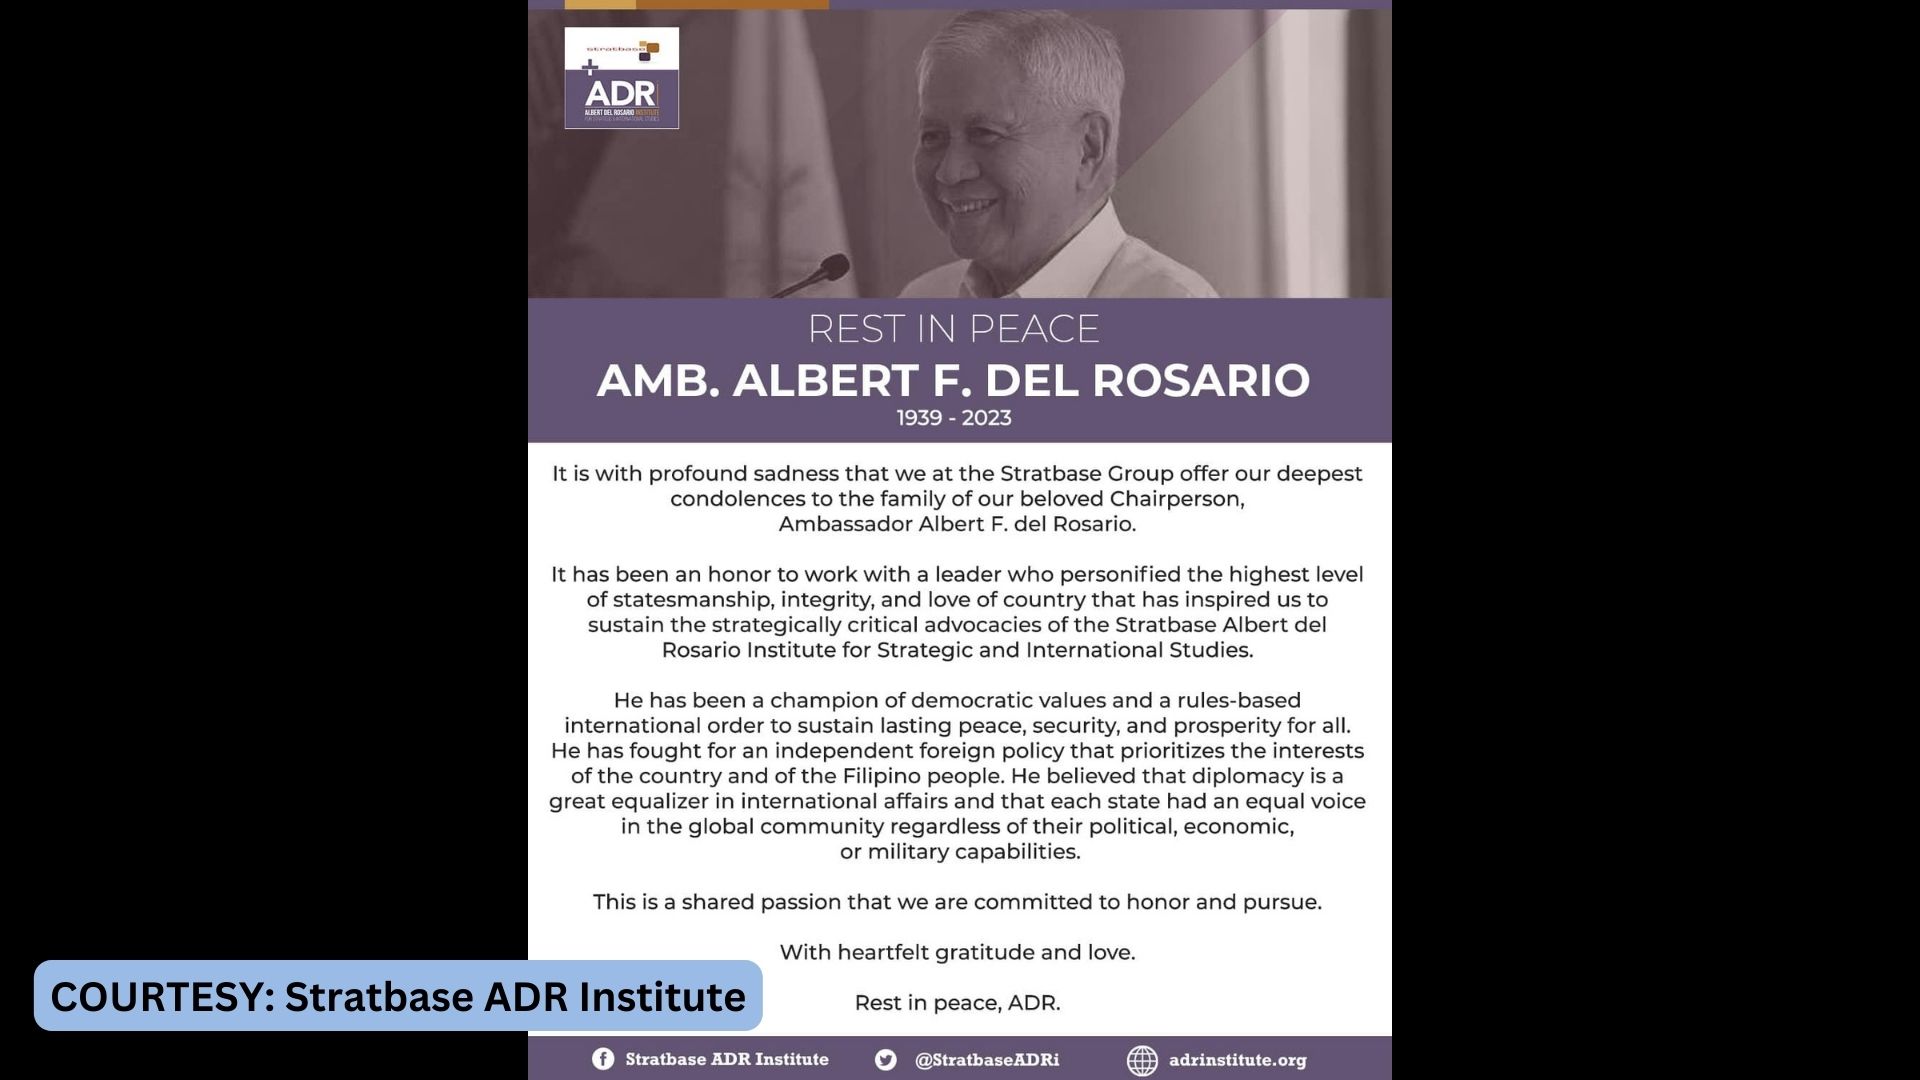 Dating DFA Sec. Albert Del Rosario pumanaw sa edad na 83